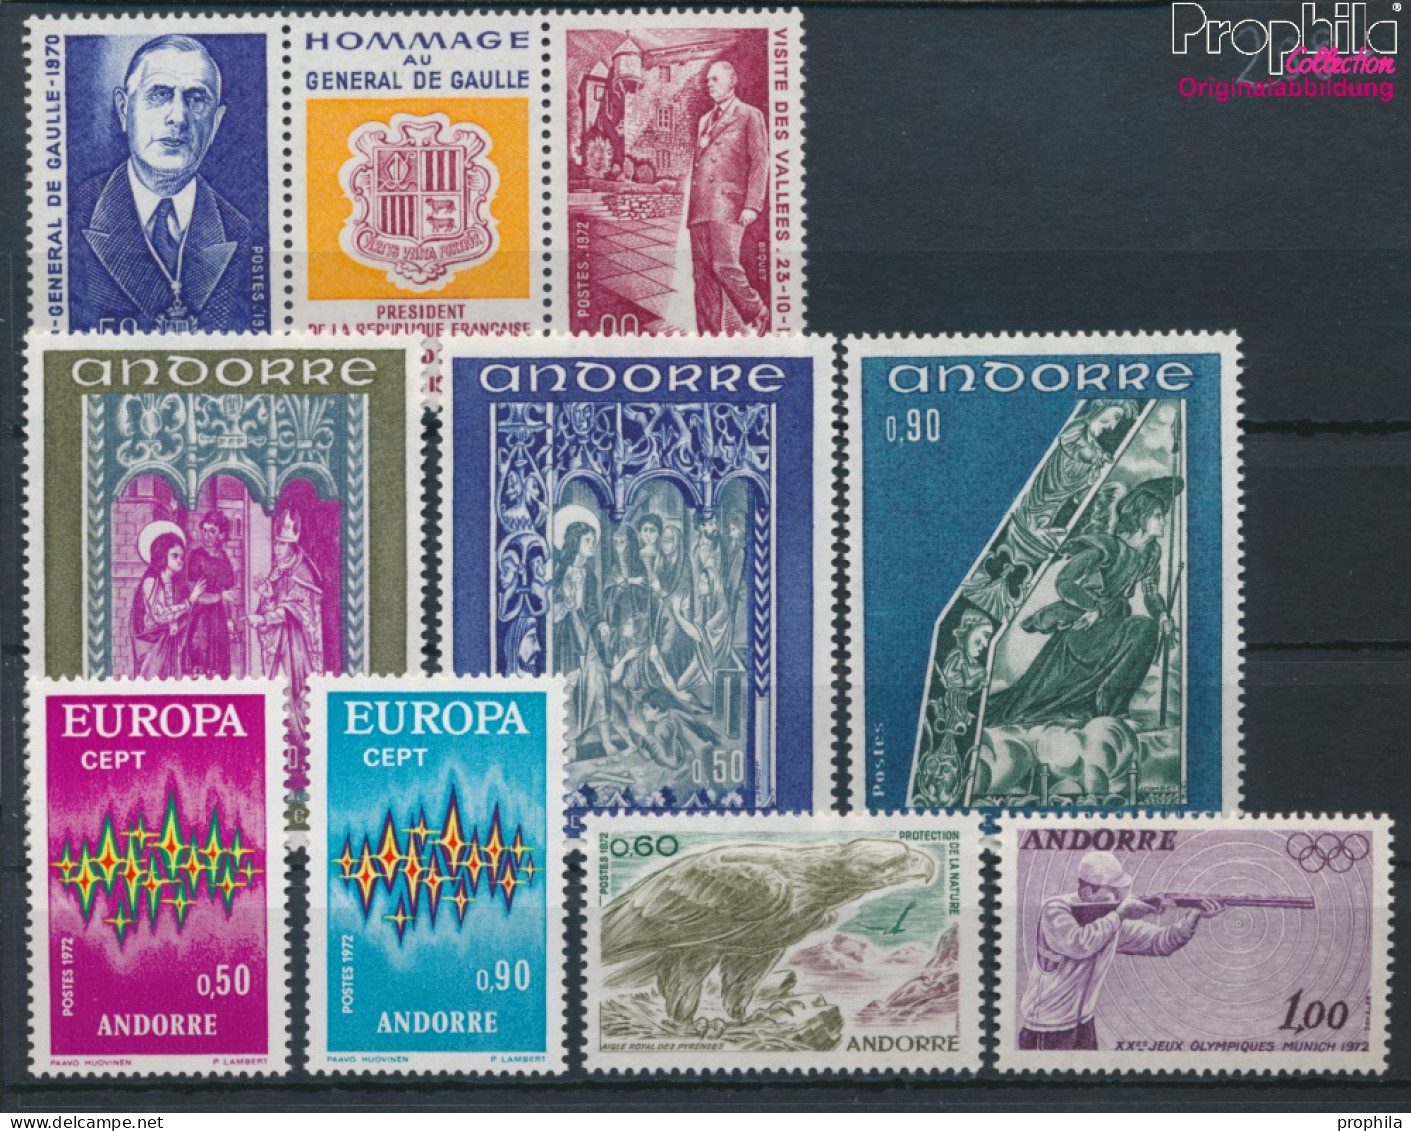 Andorra - Französische Post Postfrisch Europa 1972 Europa, Naturschutz, Olympia U.a.  (10368752 - Unused Stamps